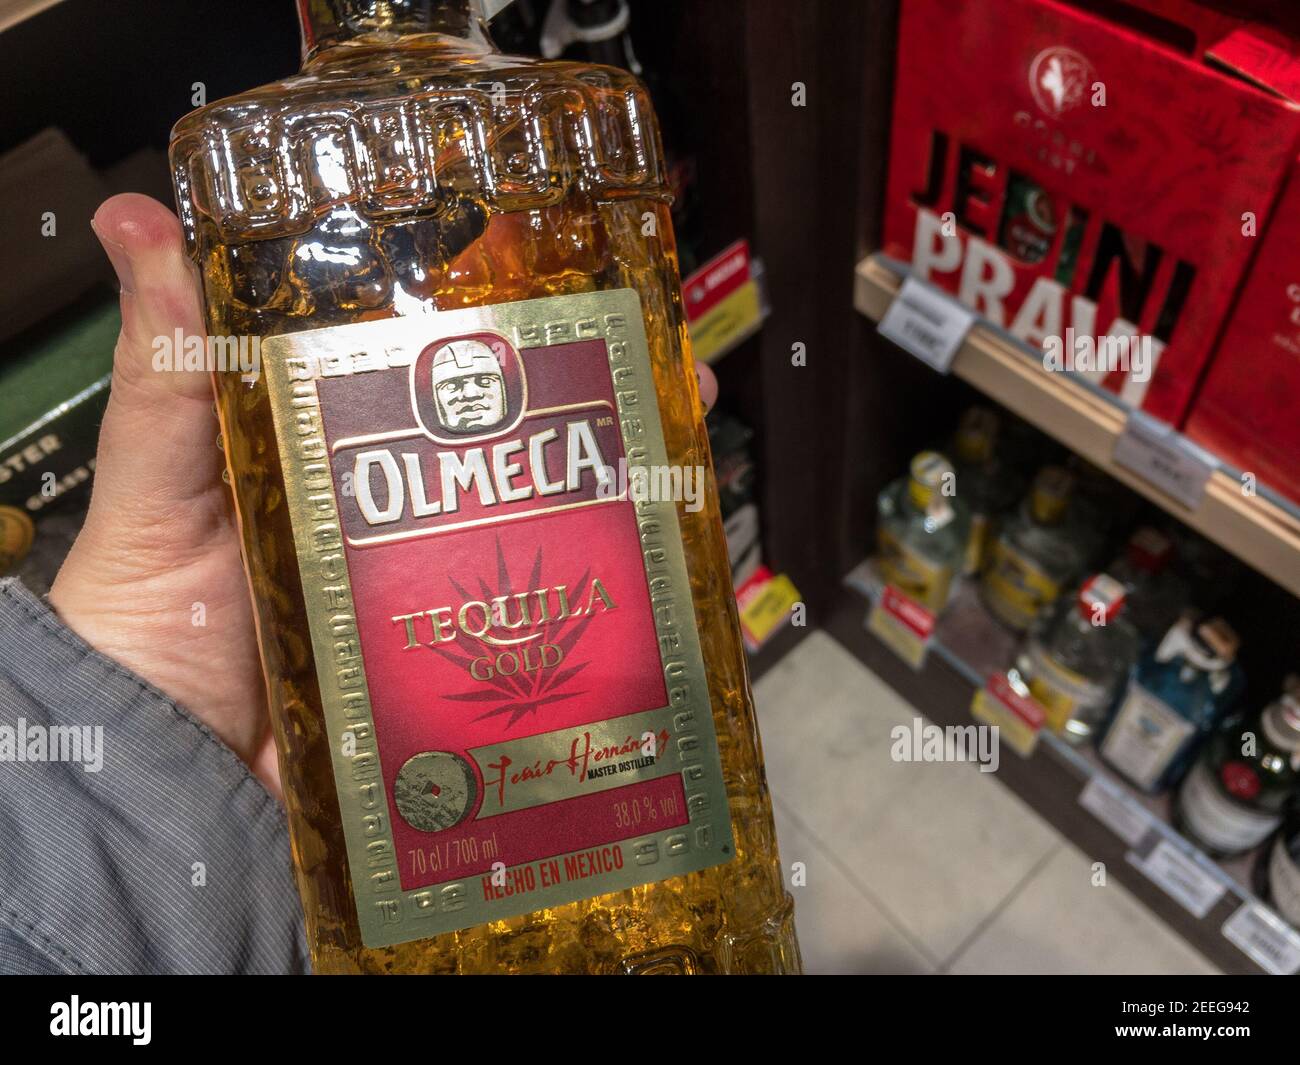 BELGRAD, SERBIEN - 8. FEBRUAR 2021: Tequila Olmeca Logo auf einer ihrer Flaschen. Olmeca ist eine mexikanische Marke von Tequila und andere mexiko Alkohole Teil Stockfoto